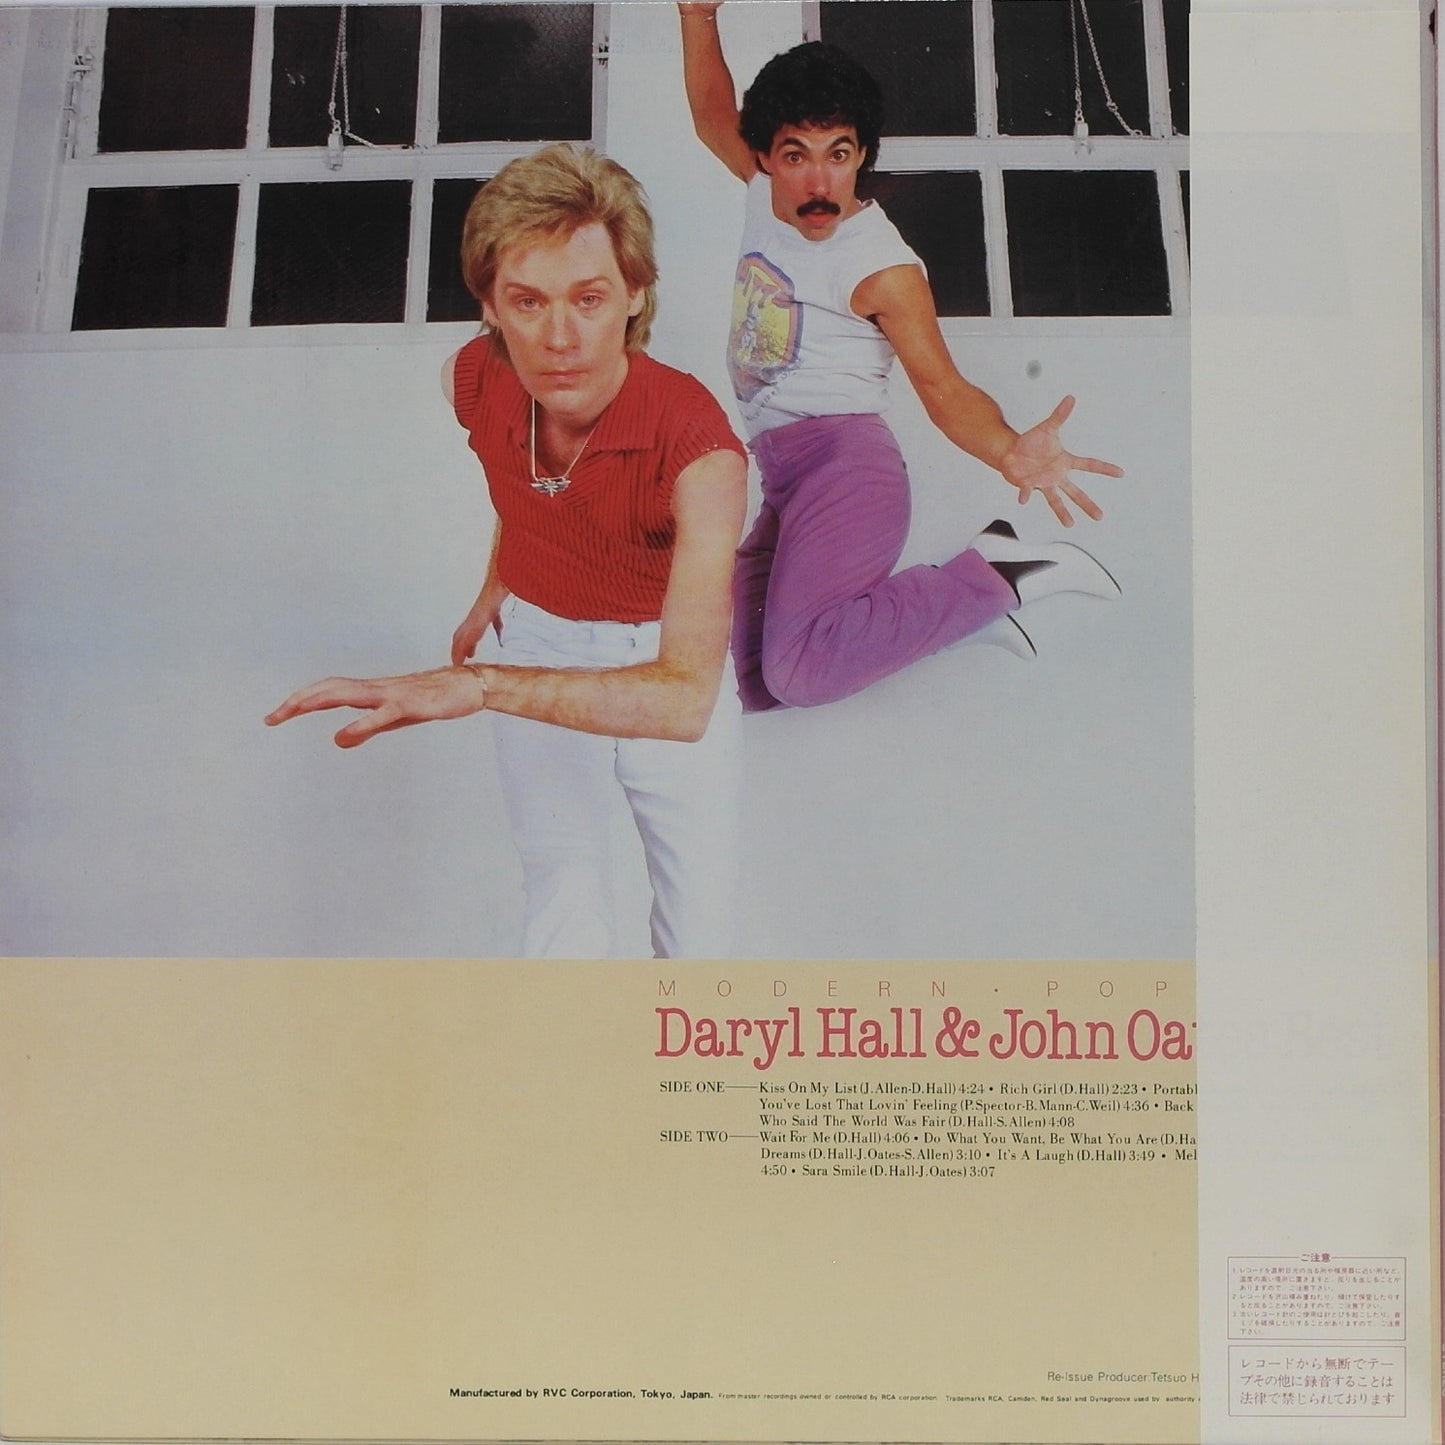 DARYL HALL & JOHN OATES - Daryl Hall & John Oates Best